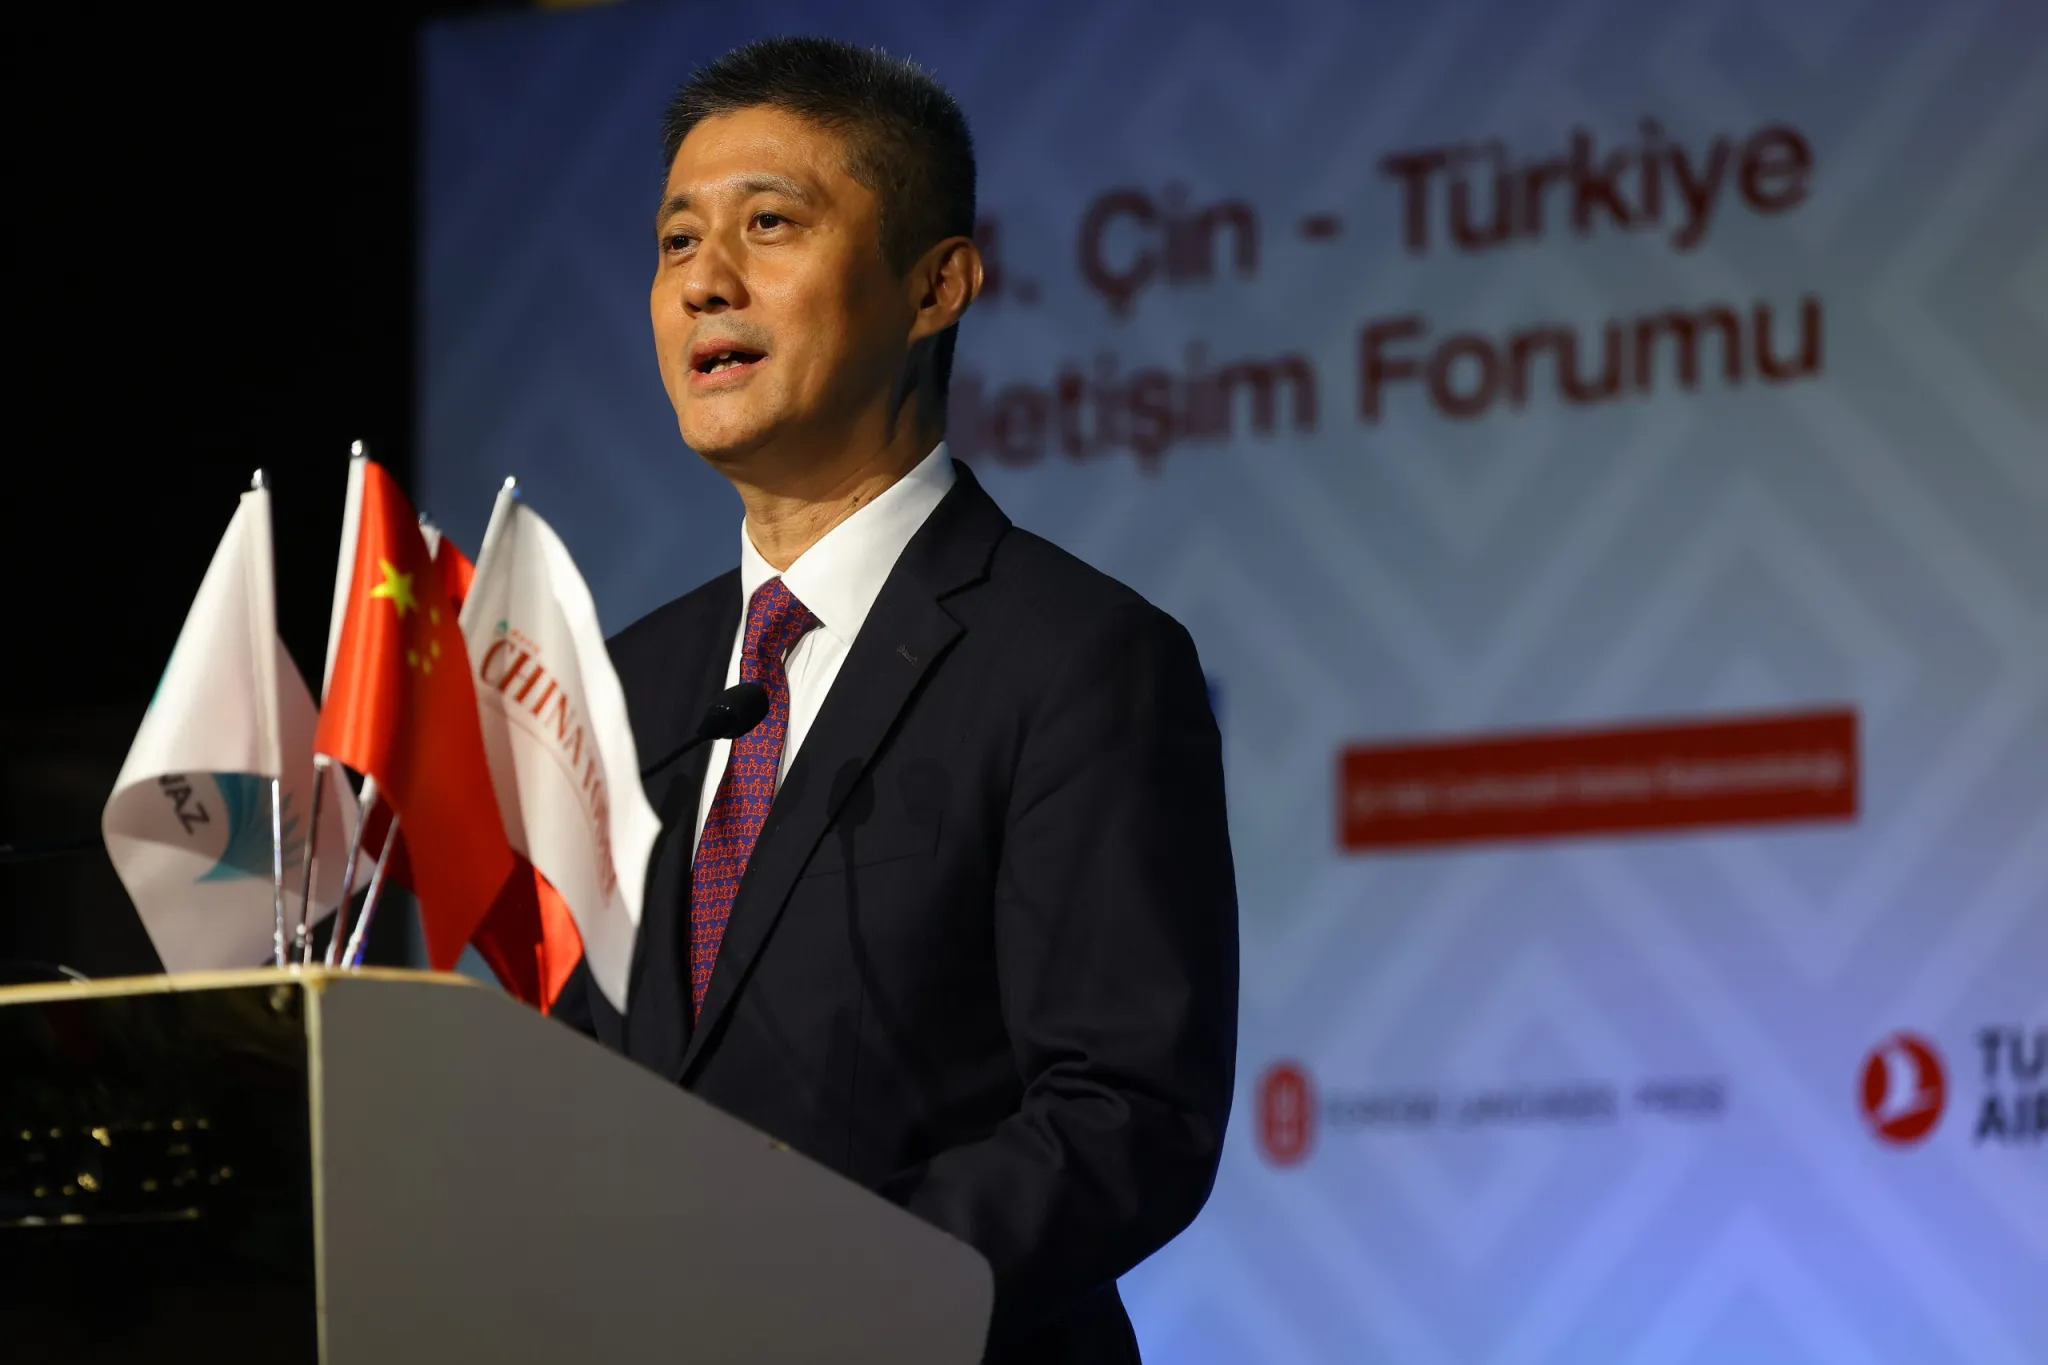 Türkiye’nin Çin ile ilişkileri ivme kazanıyor